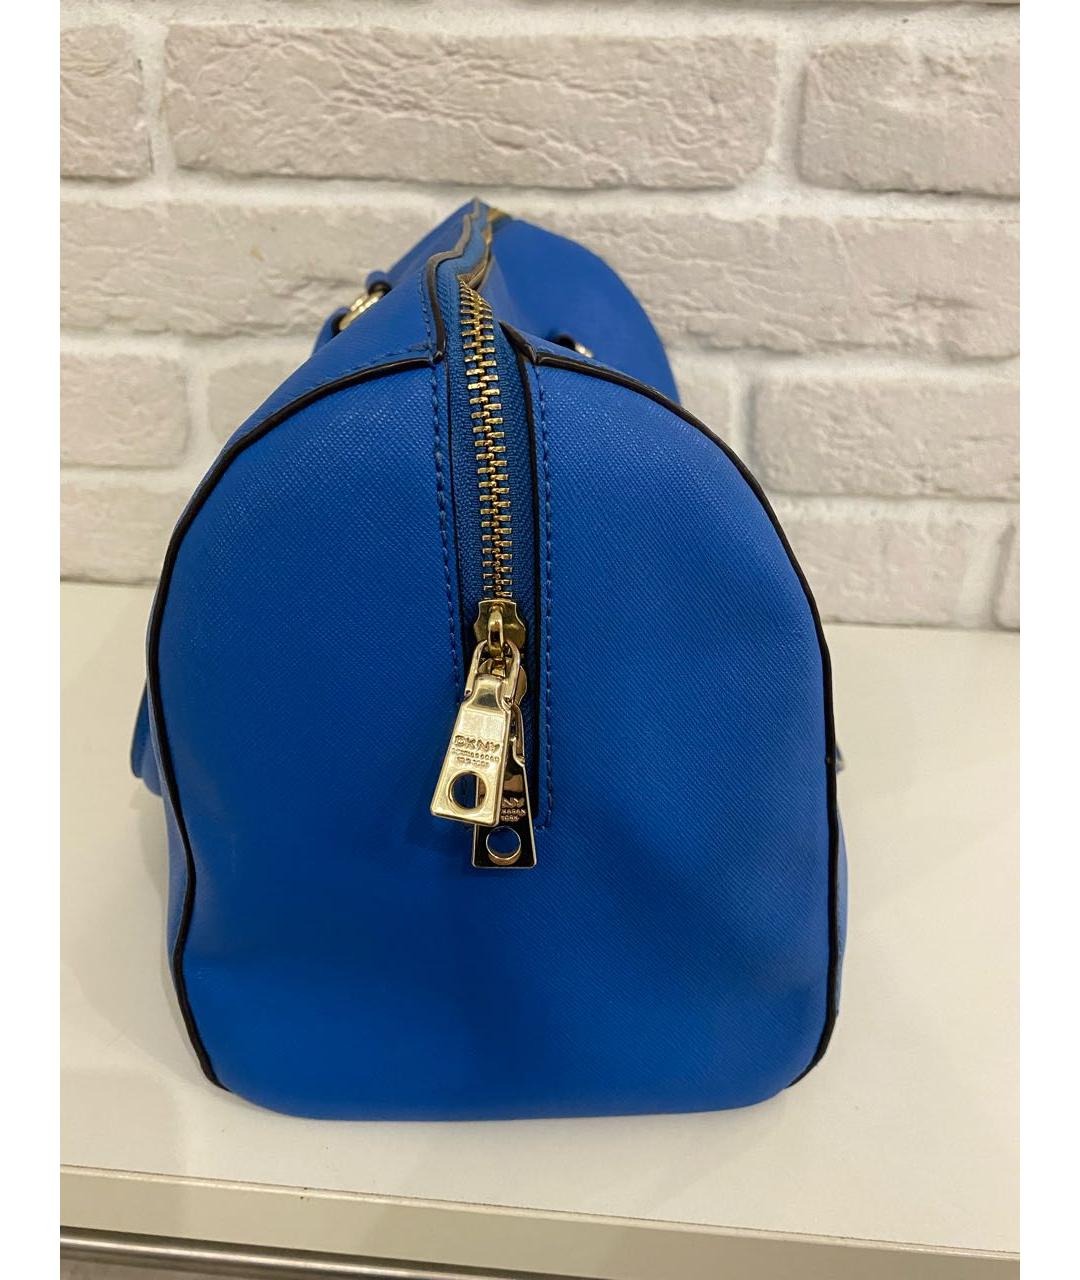 DKNY Синяя кожаная сумка тоут, фото 2